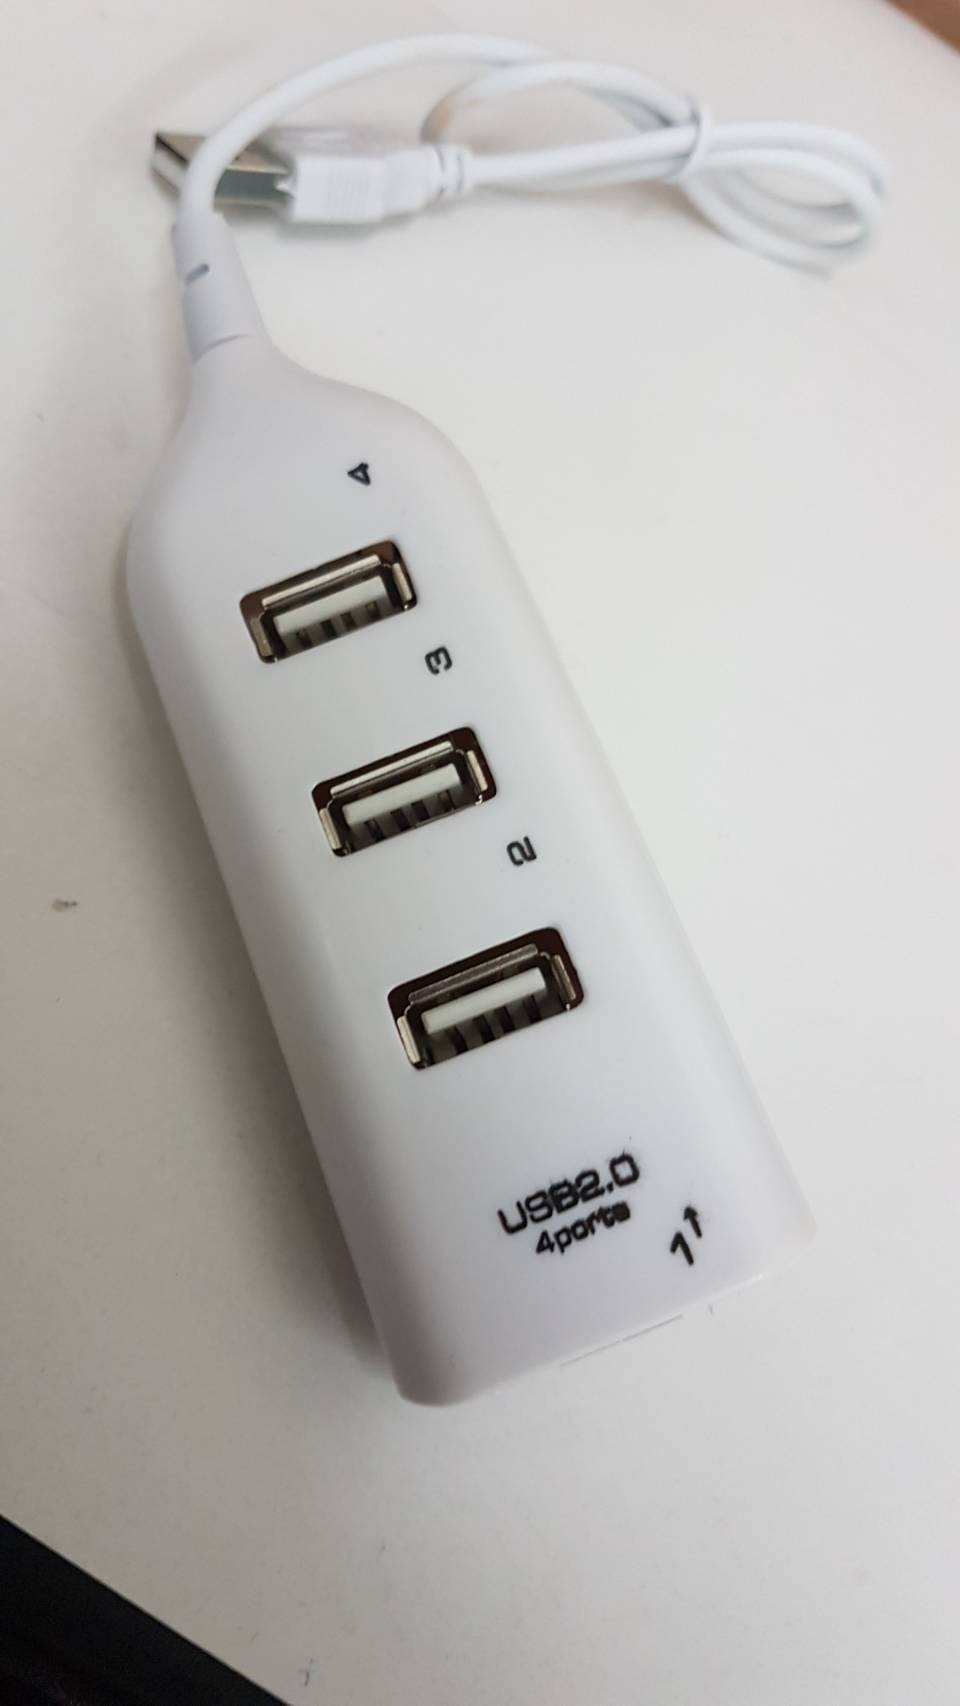 ตัวขยายพอร์ต USB Ports HUB อุปกรณ์เพิ่มช่อง USB จาก 1 เป็น 4 ช่อง ขนาด 3.1 แอมป์ สายยาว 0.4 เมตร